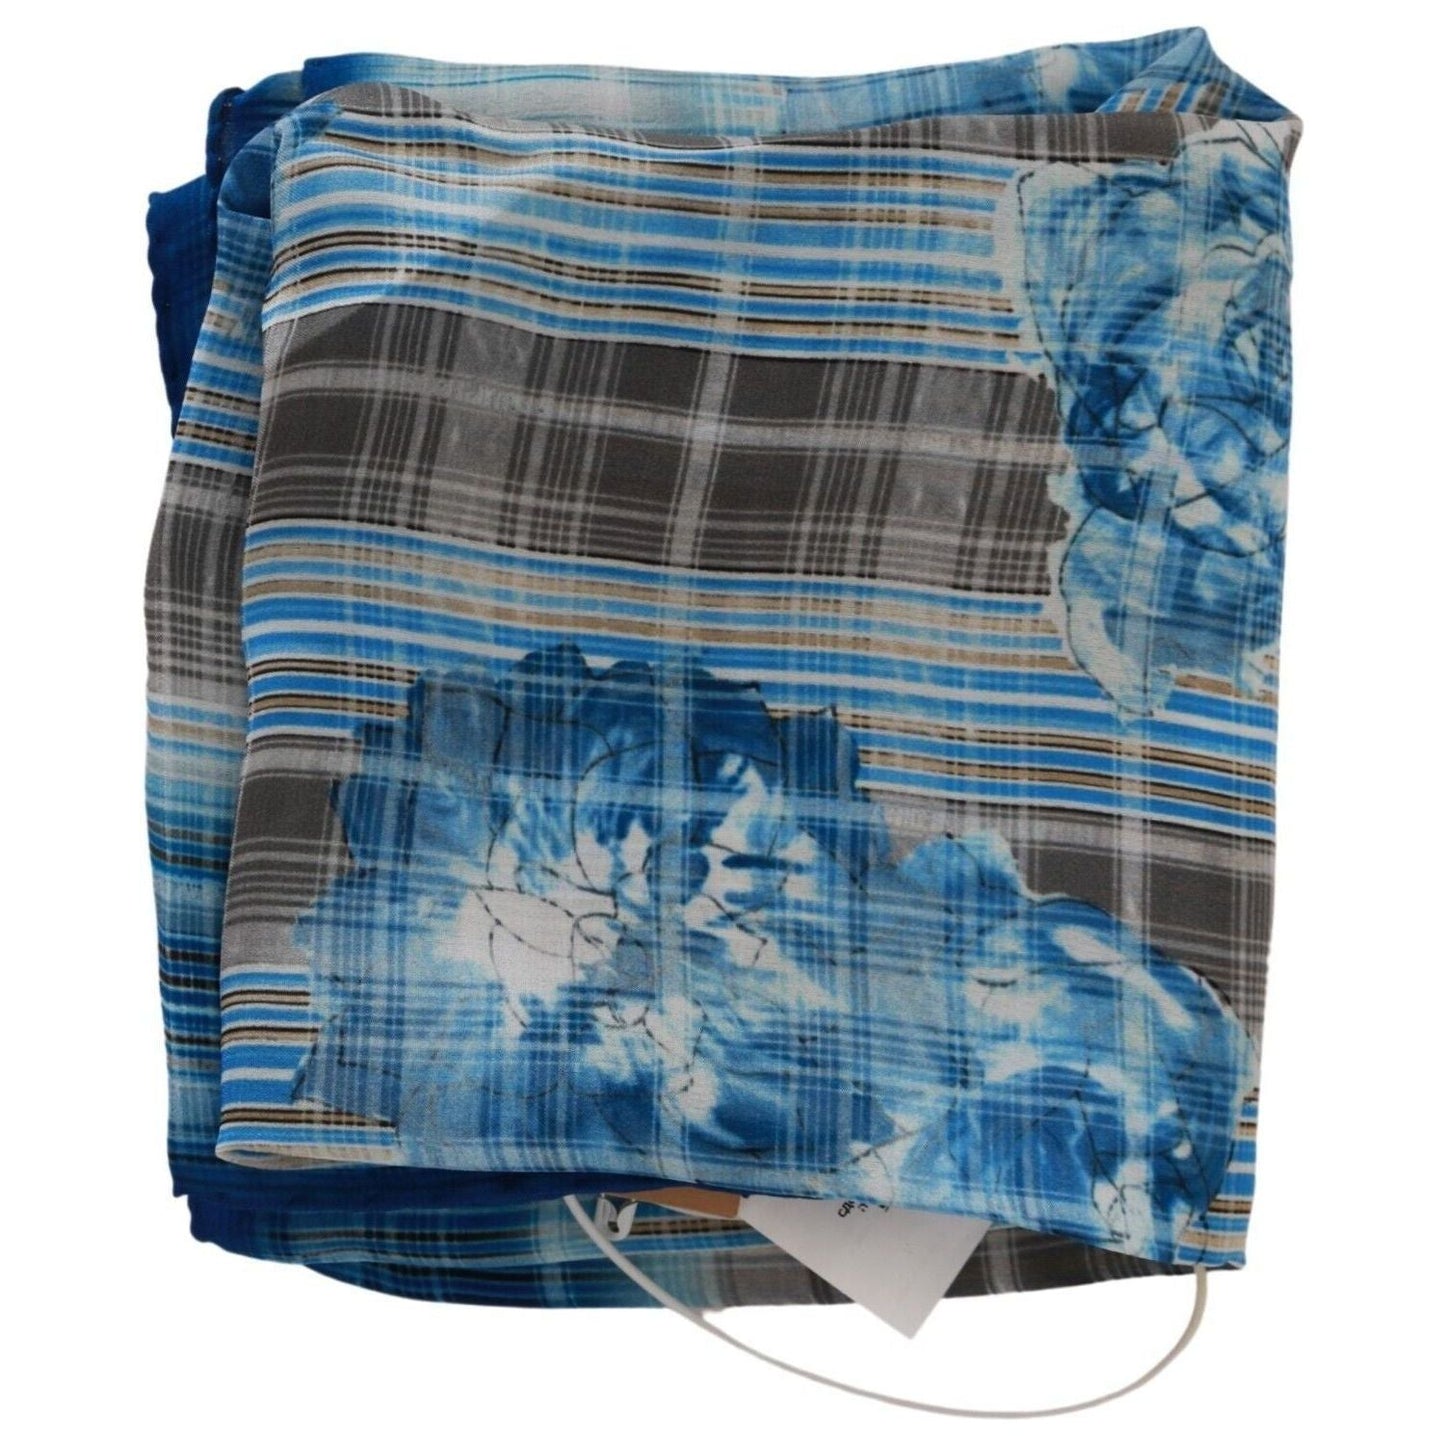 John Galliano Elegant Floral Stripe Cotton Bandana blue-stripe-floral-printed-bandana-cotton-square-scarf